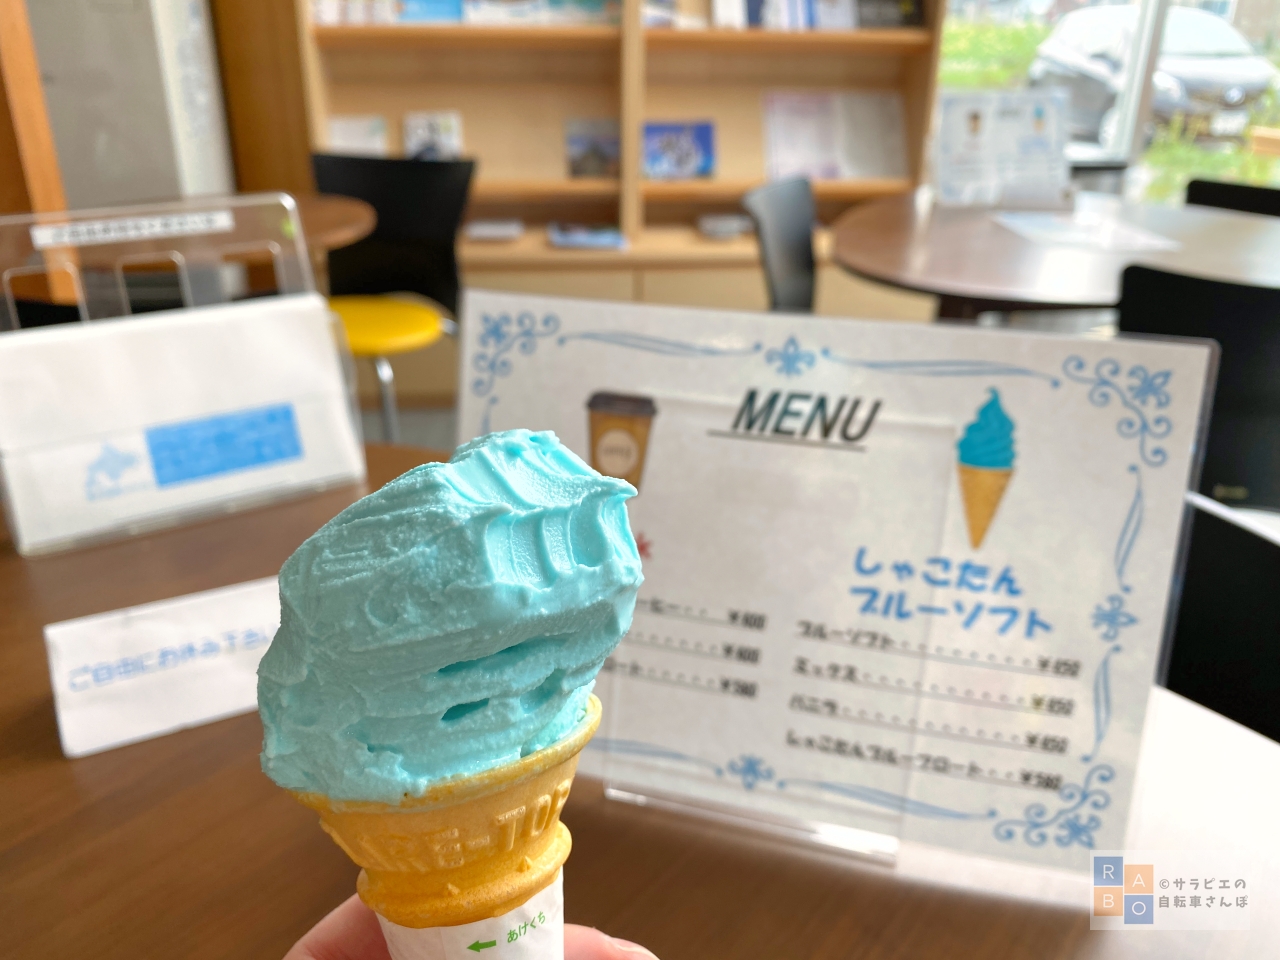 しゃこたんブルーの青いソフトクリーム